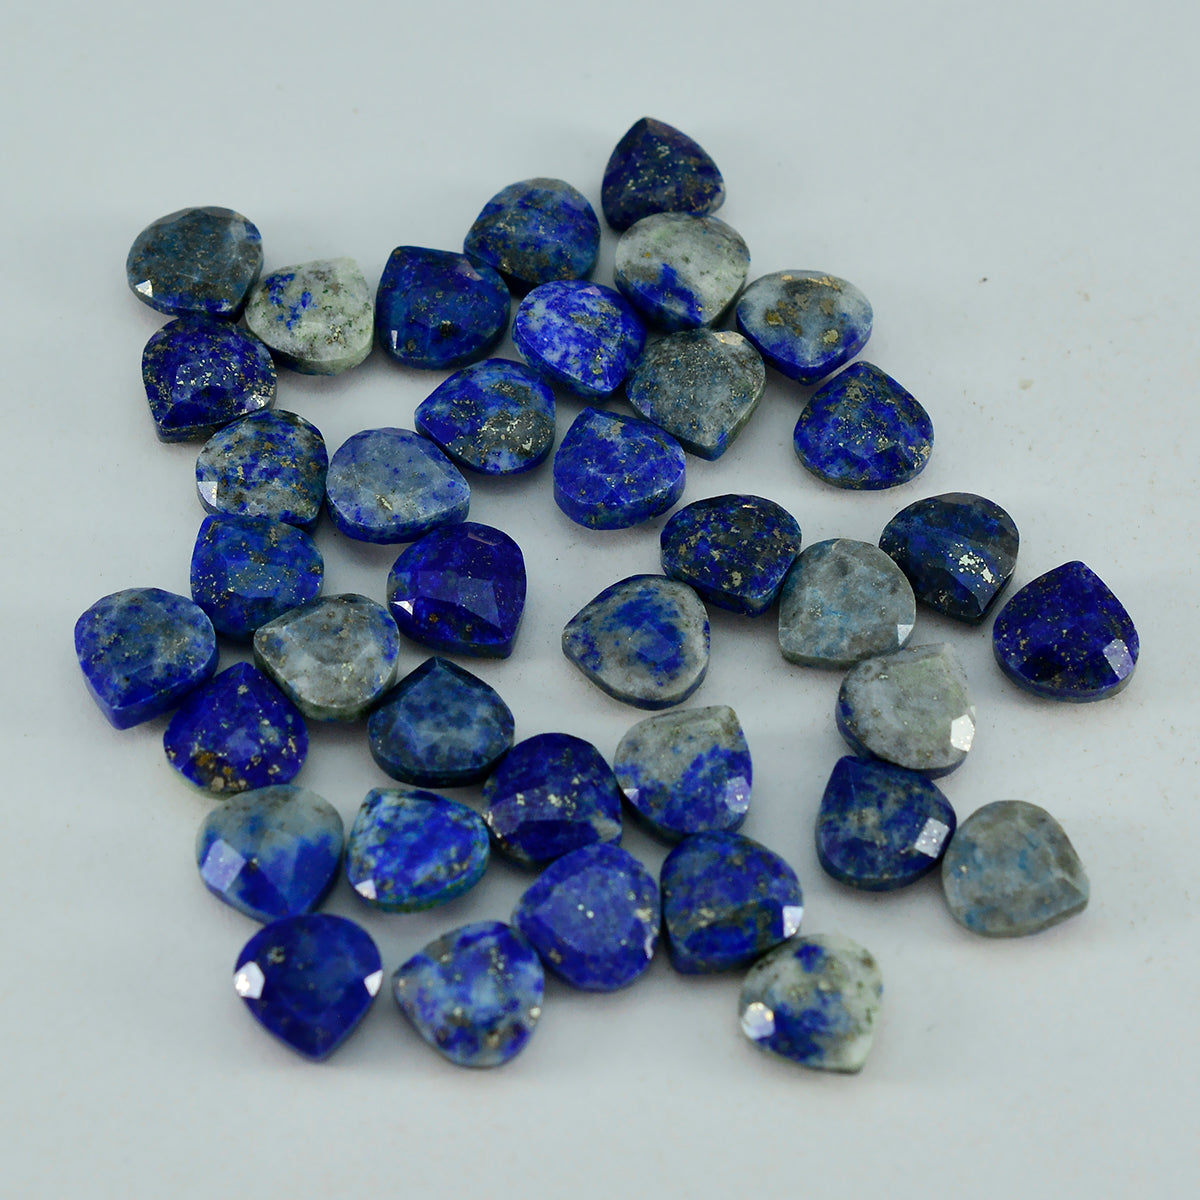 Riyogems 1PC Natuurlijke Blauwe Lapis Lazuli Facet 12x12 mm Hartvorm geweldige Kwaliteit Steen